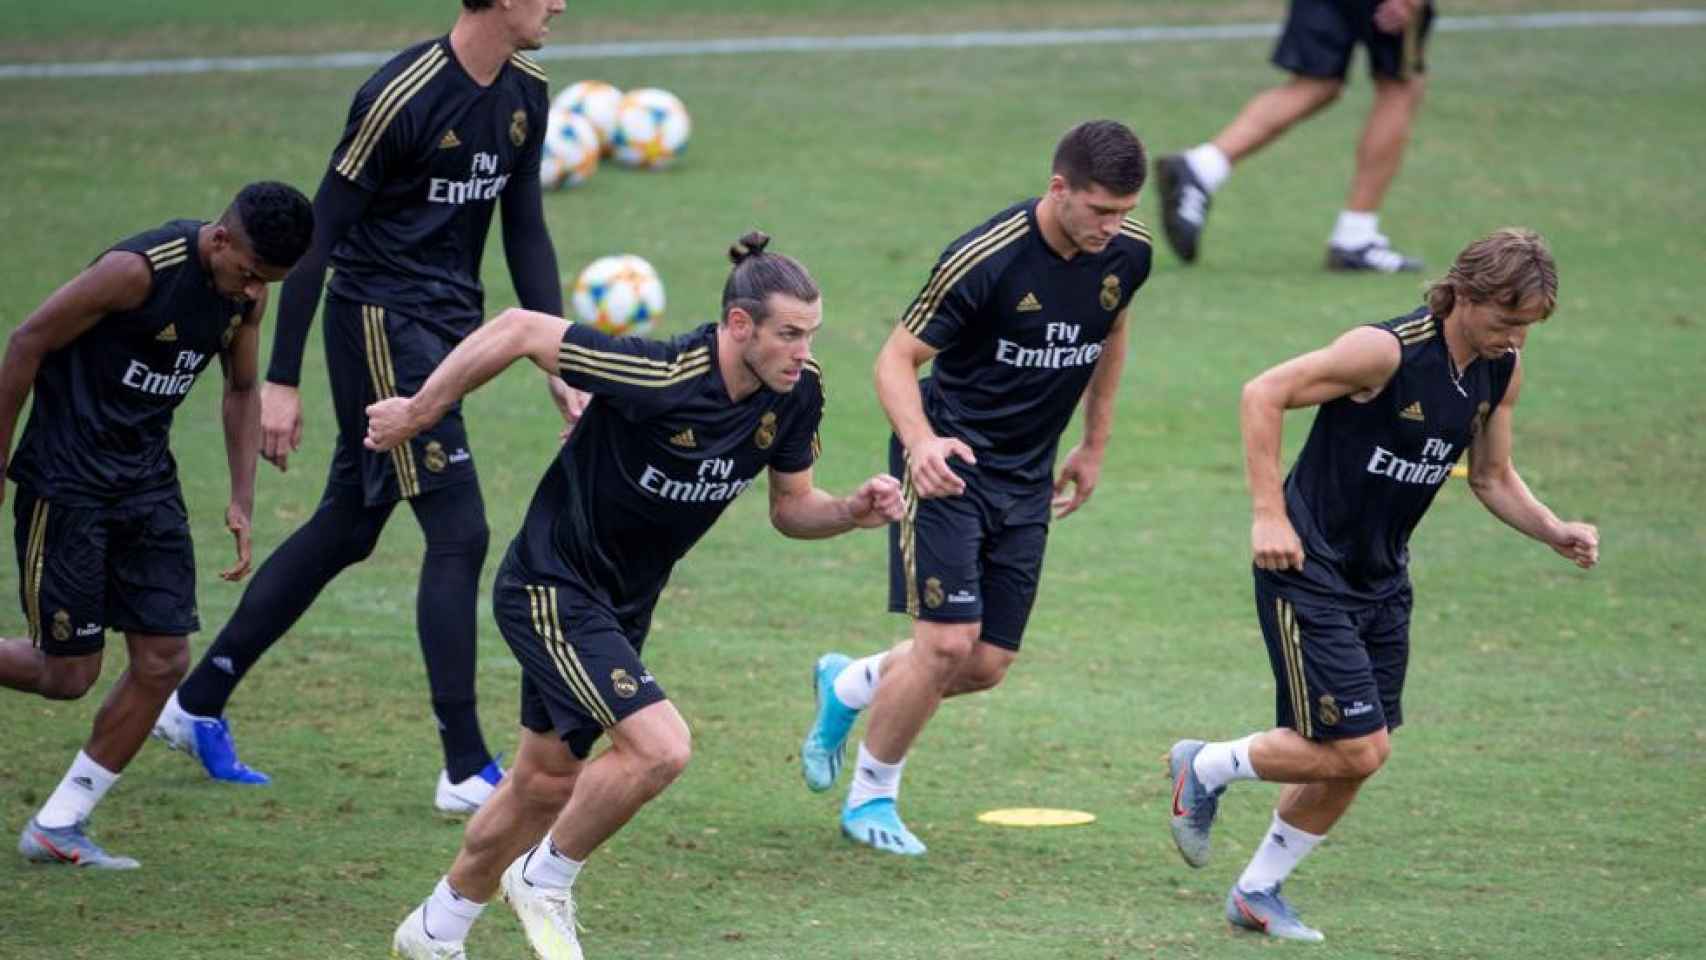 Bale, Jovic y Modric en un entrenamiento del Real Madrid / EFE